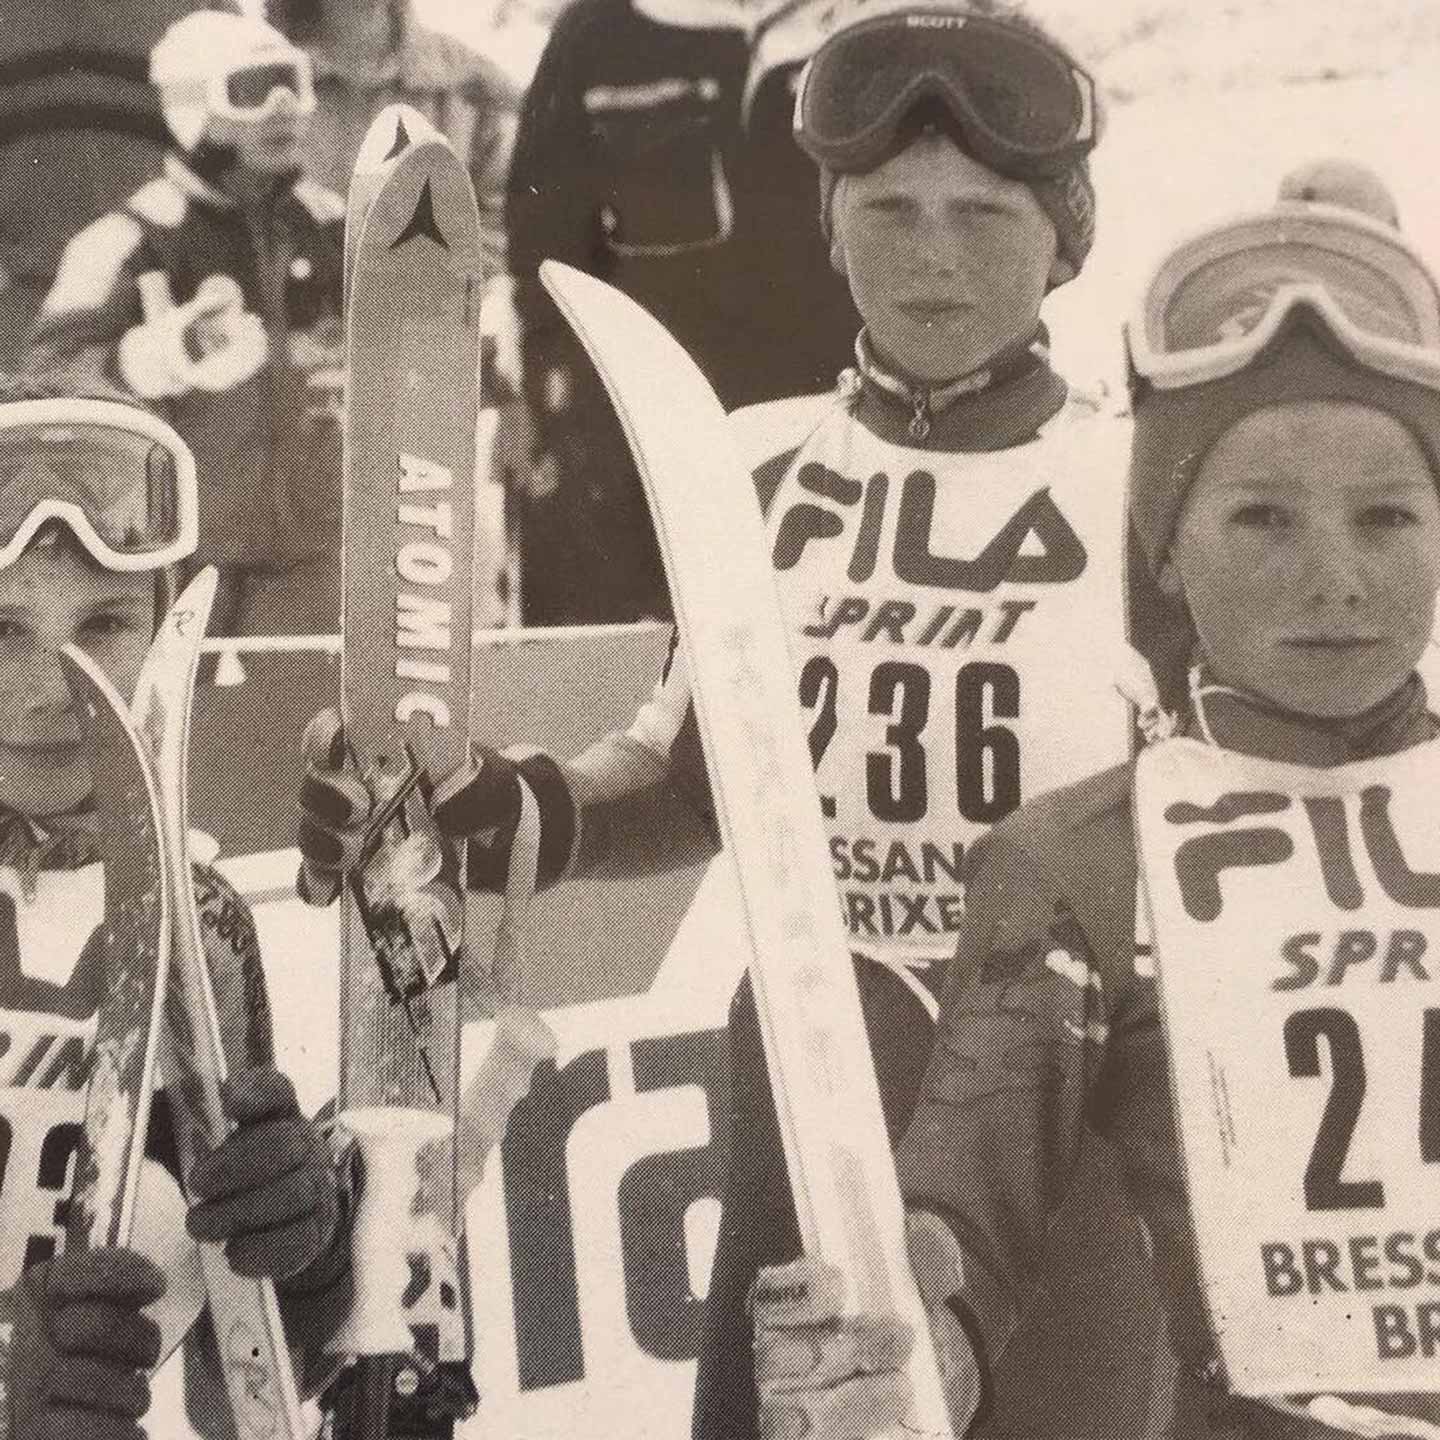 Ski Star Werner Heel at that time